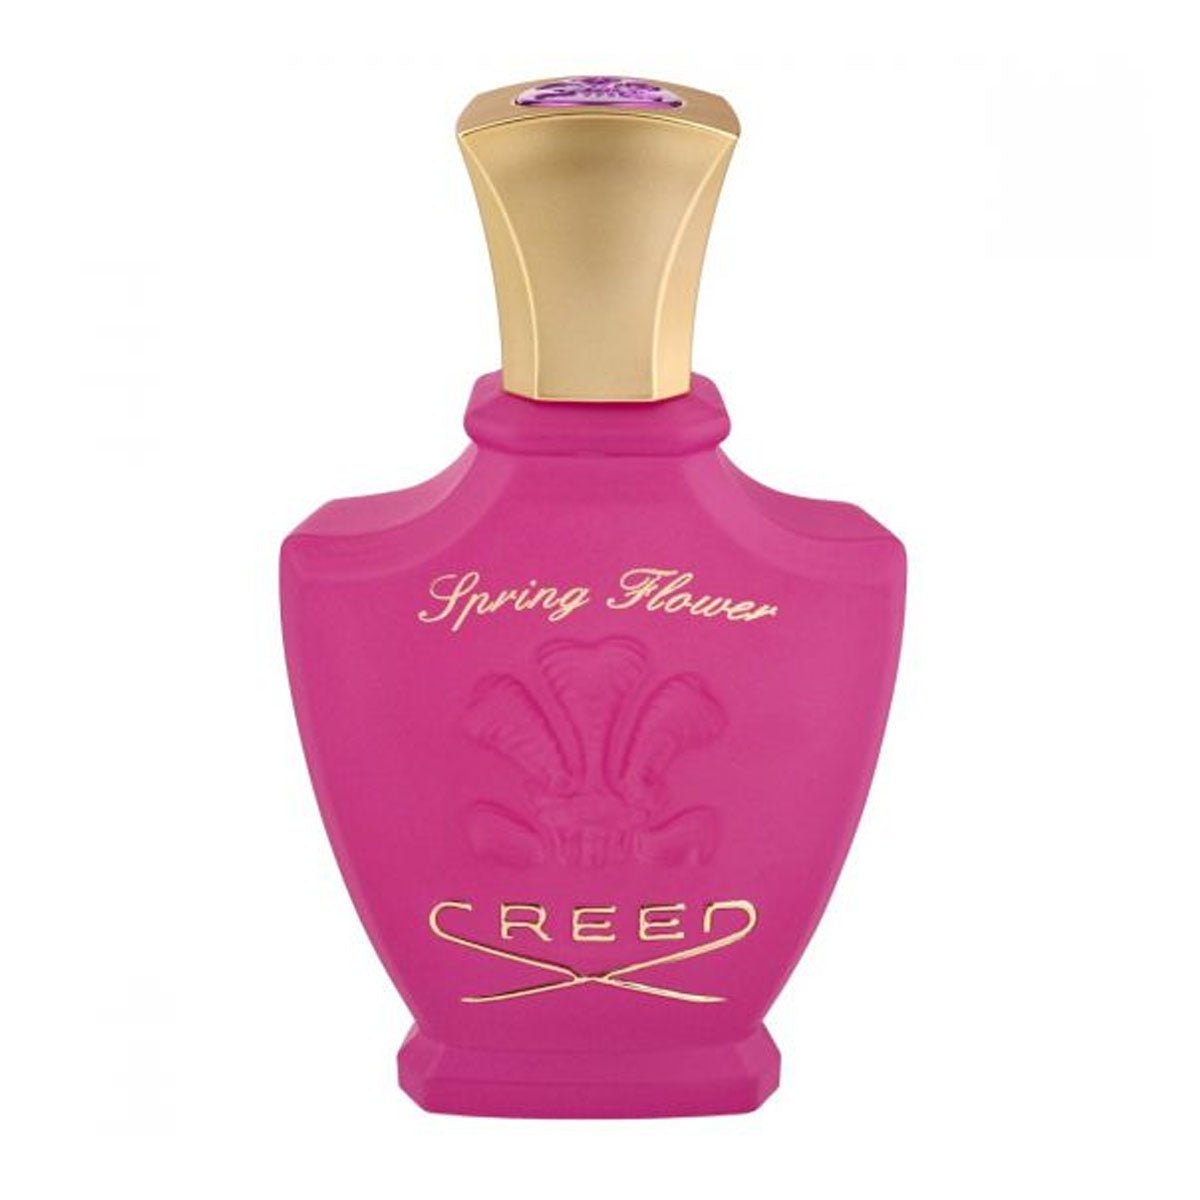 Creed Spring Flower For Women Edp Spray 75ml -Perfume - AllurebeautypkCreed Spring Flower For Women Edp Spray 75ml -Perfume